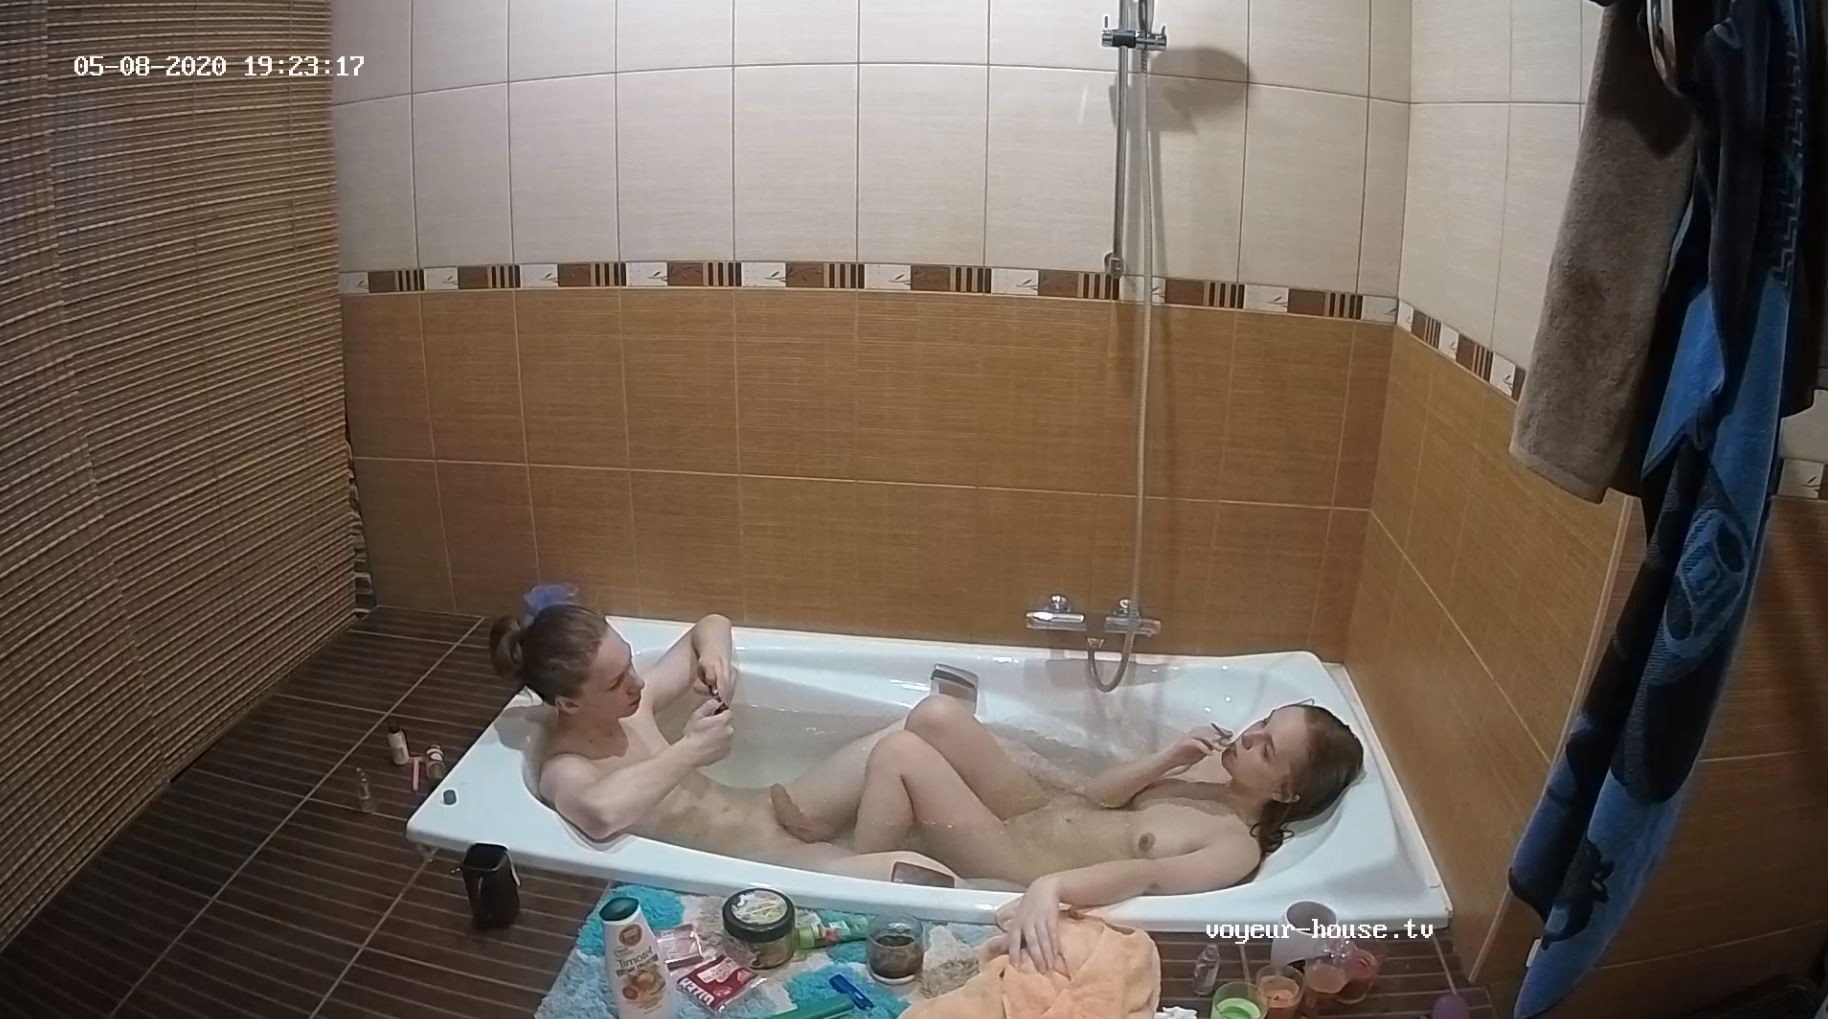 Valeria & Marcus bath, May08/20